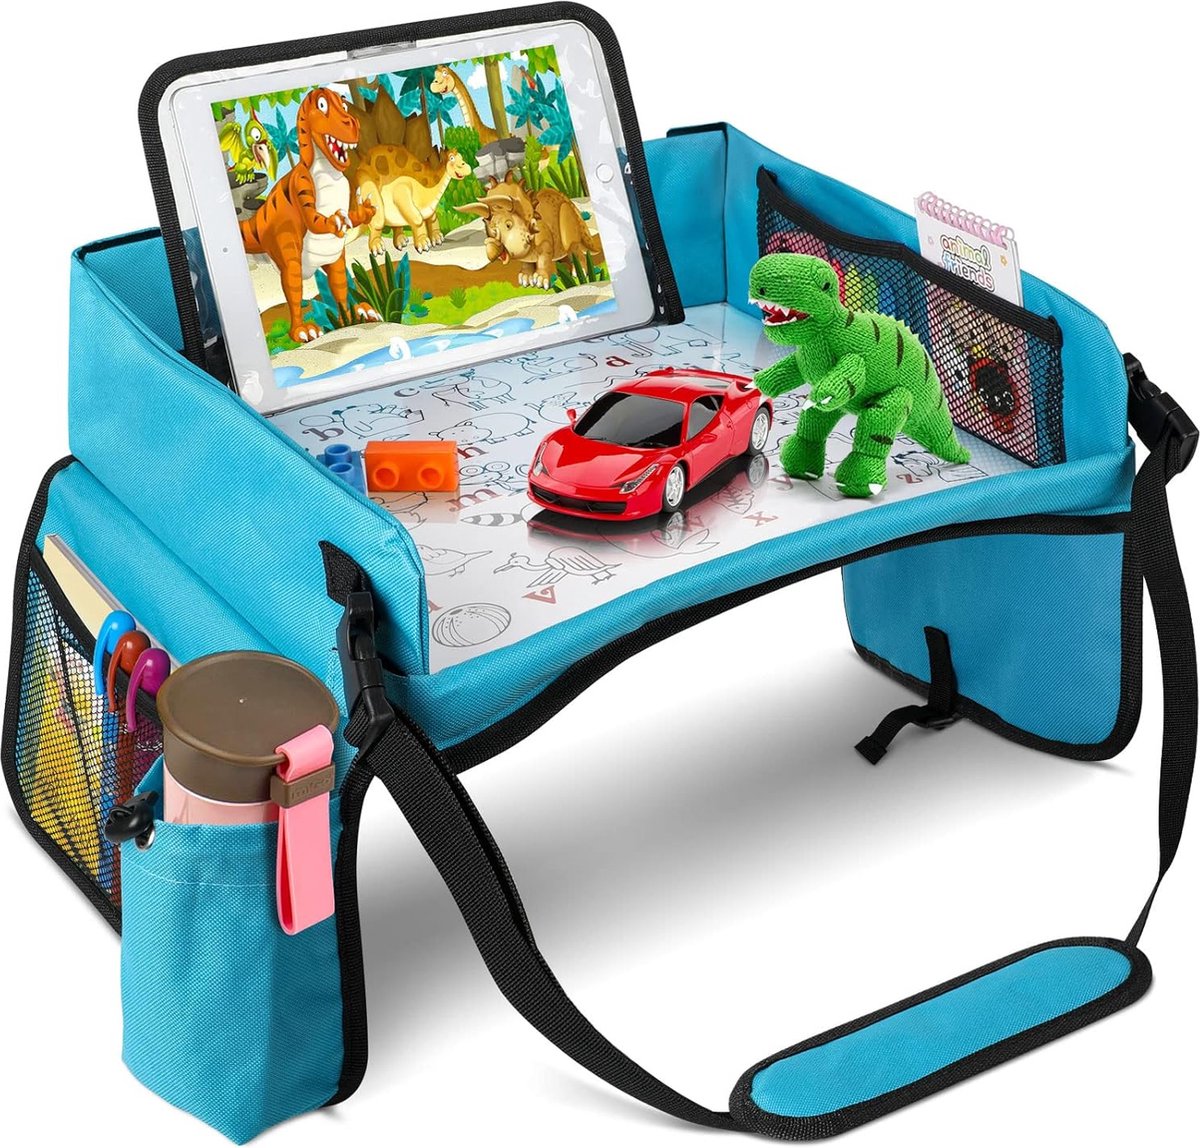 Premium Reistafel Voor Auto met Tekentafel & Tablethouder - Autostoel Organizer -Speeltafel - Whiteboard - Blauw - Merkloos